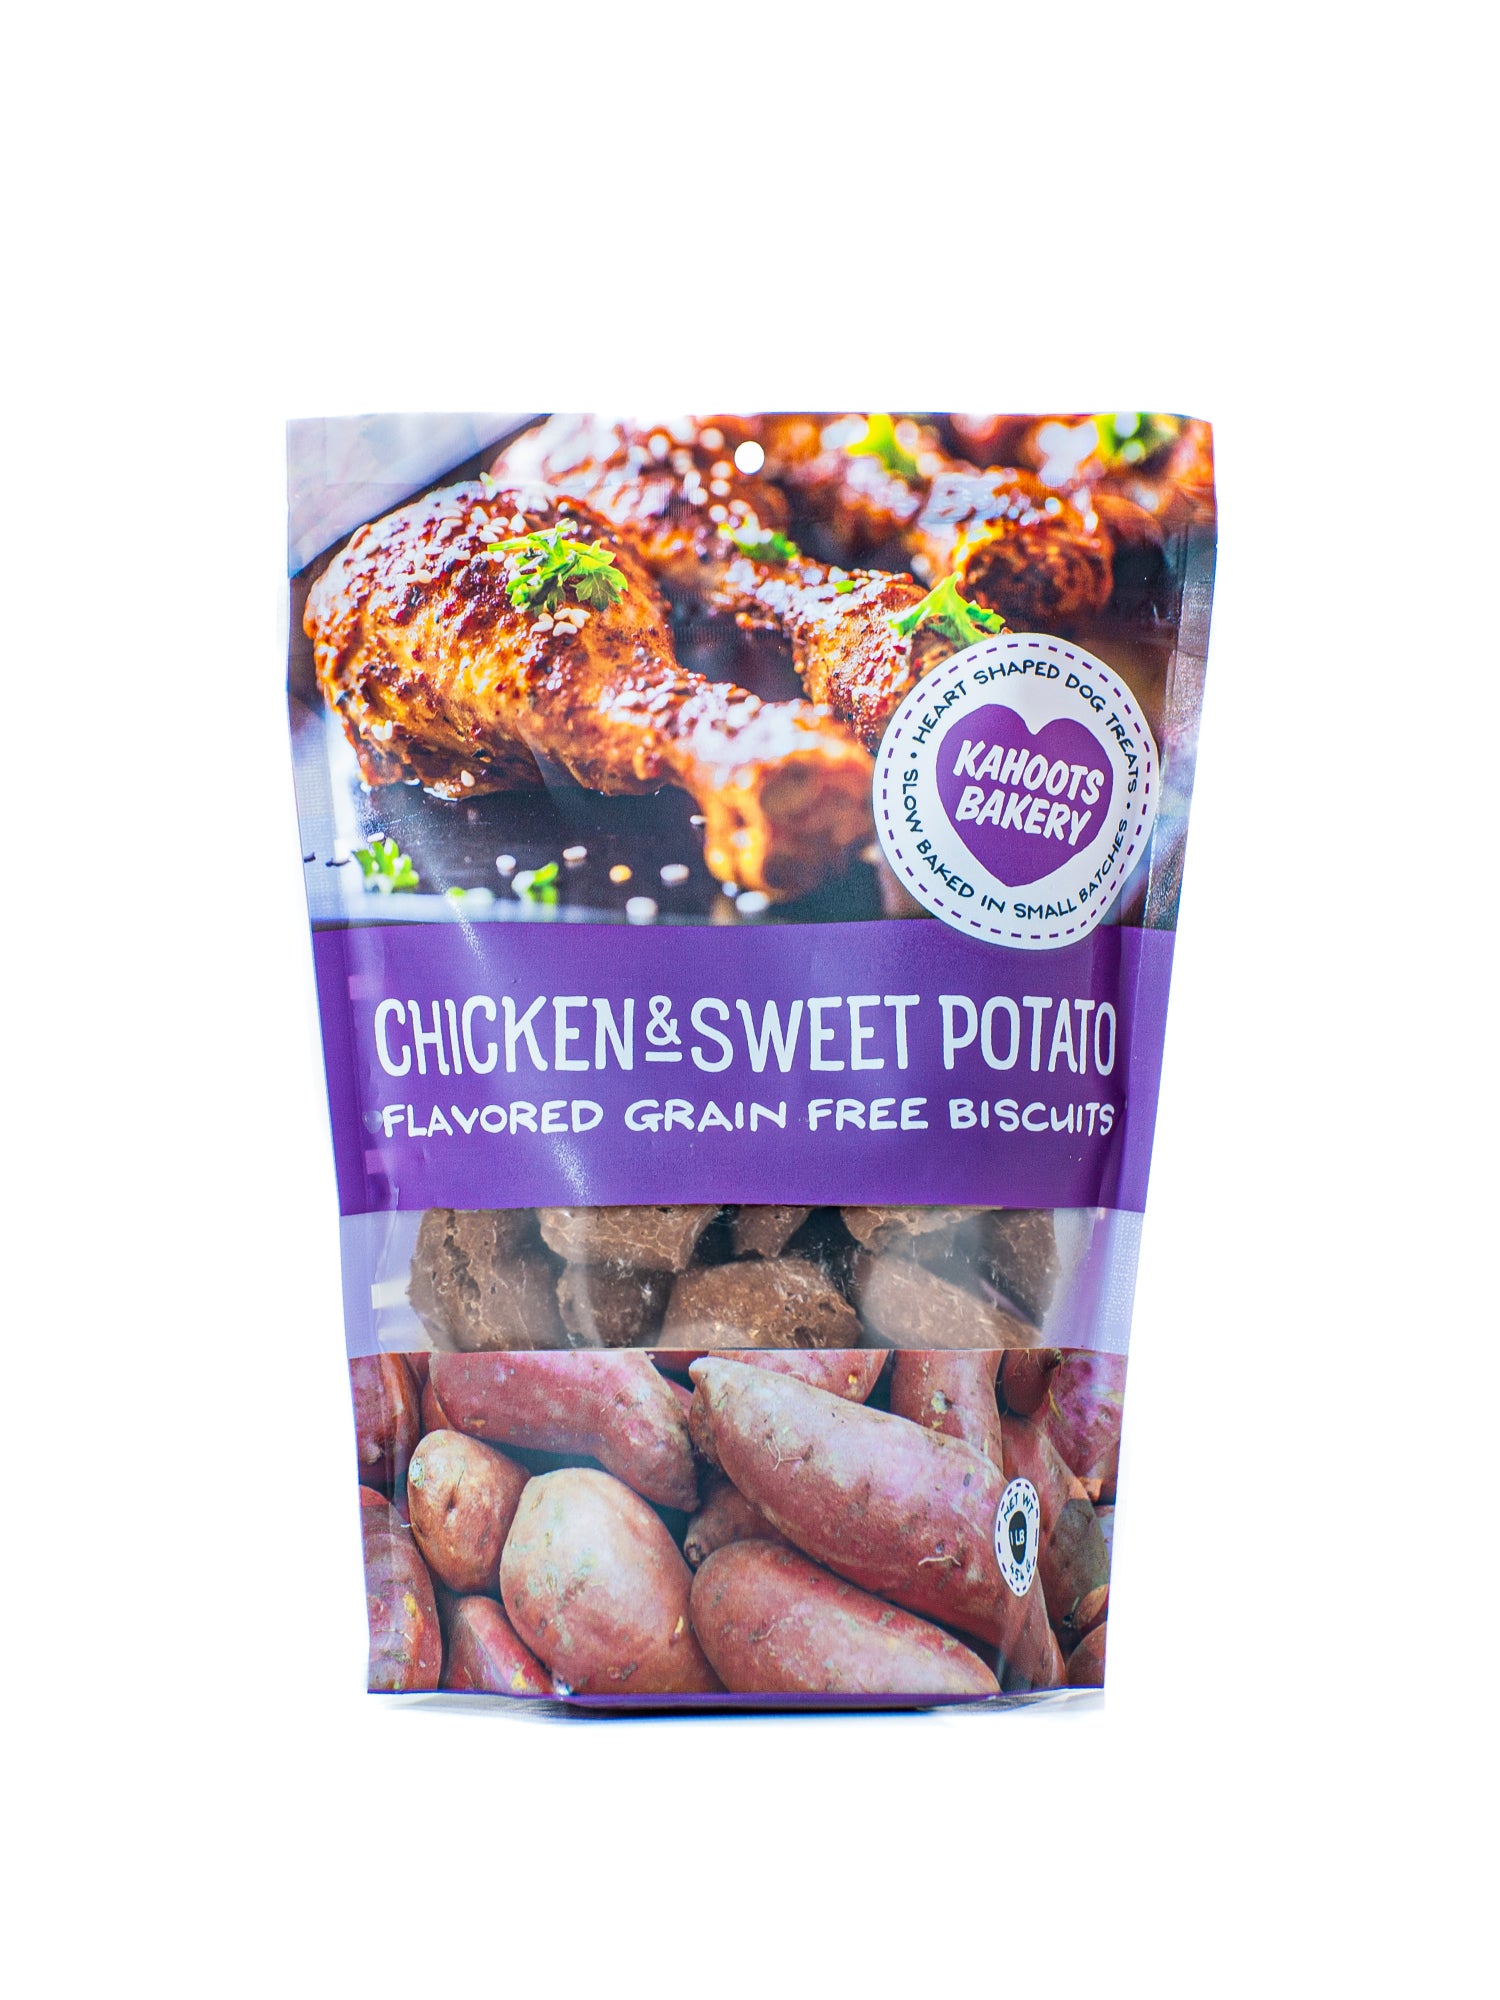 Chicken & Sweet Potato Biscuits